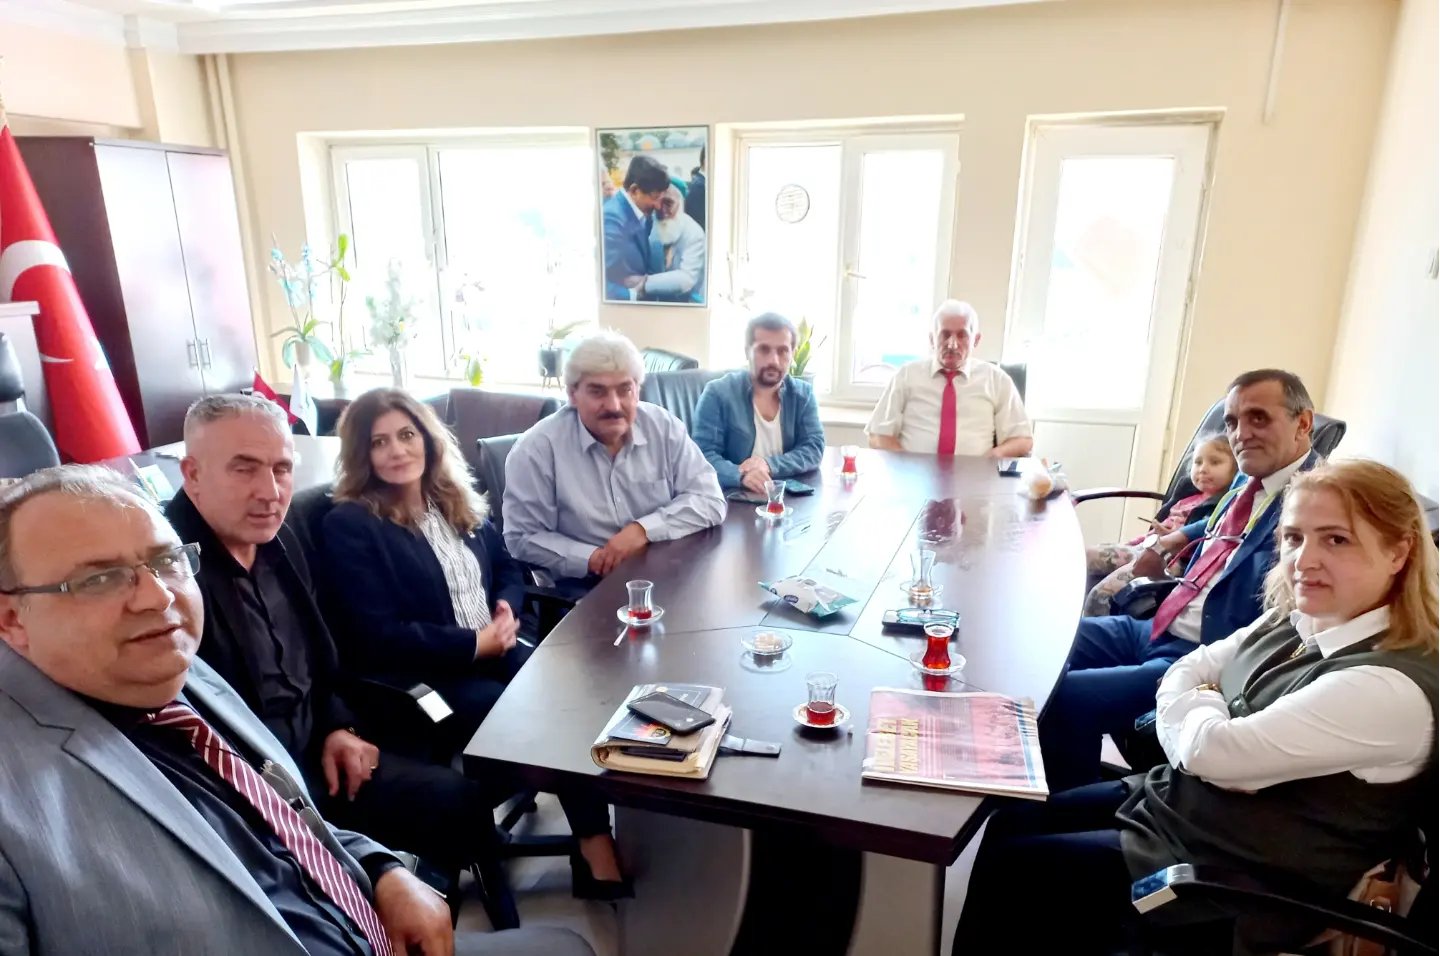 Manşet Marmara Gazetesi,Batı Yakası Medya sahibi Bülent Kömürcü İl binamizda misafirimiz oldu